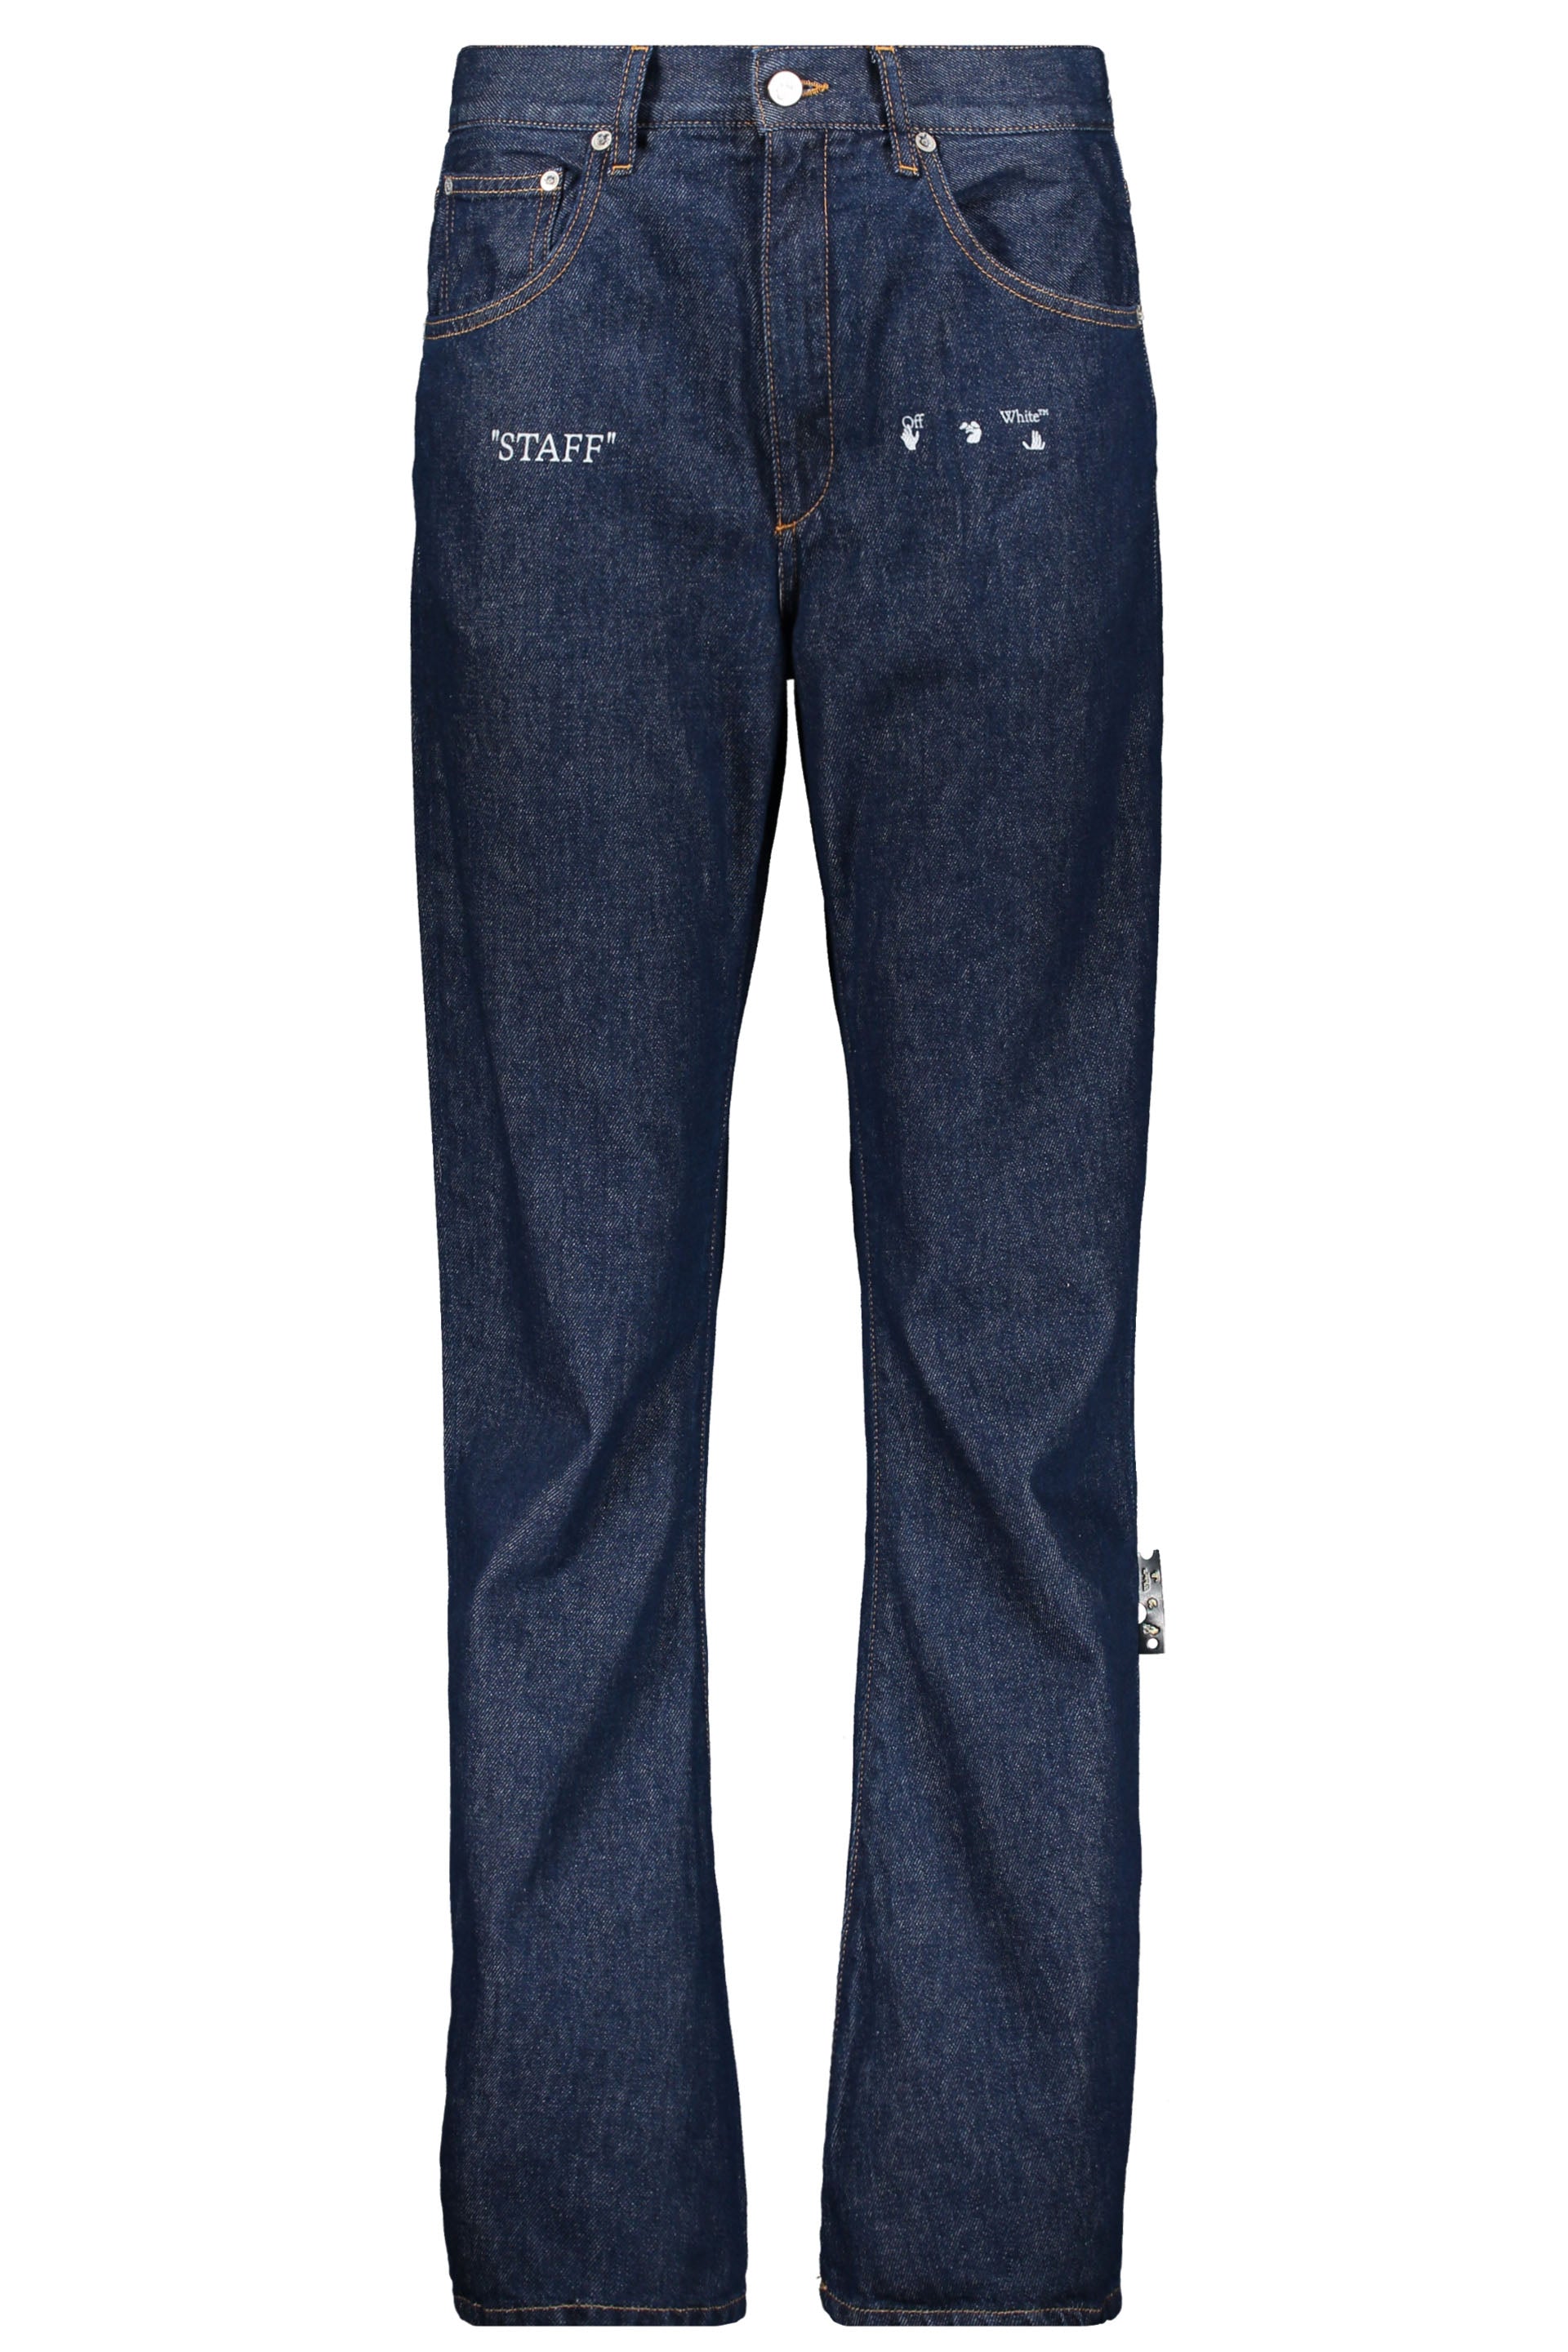 5-pocket slim fit jeans